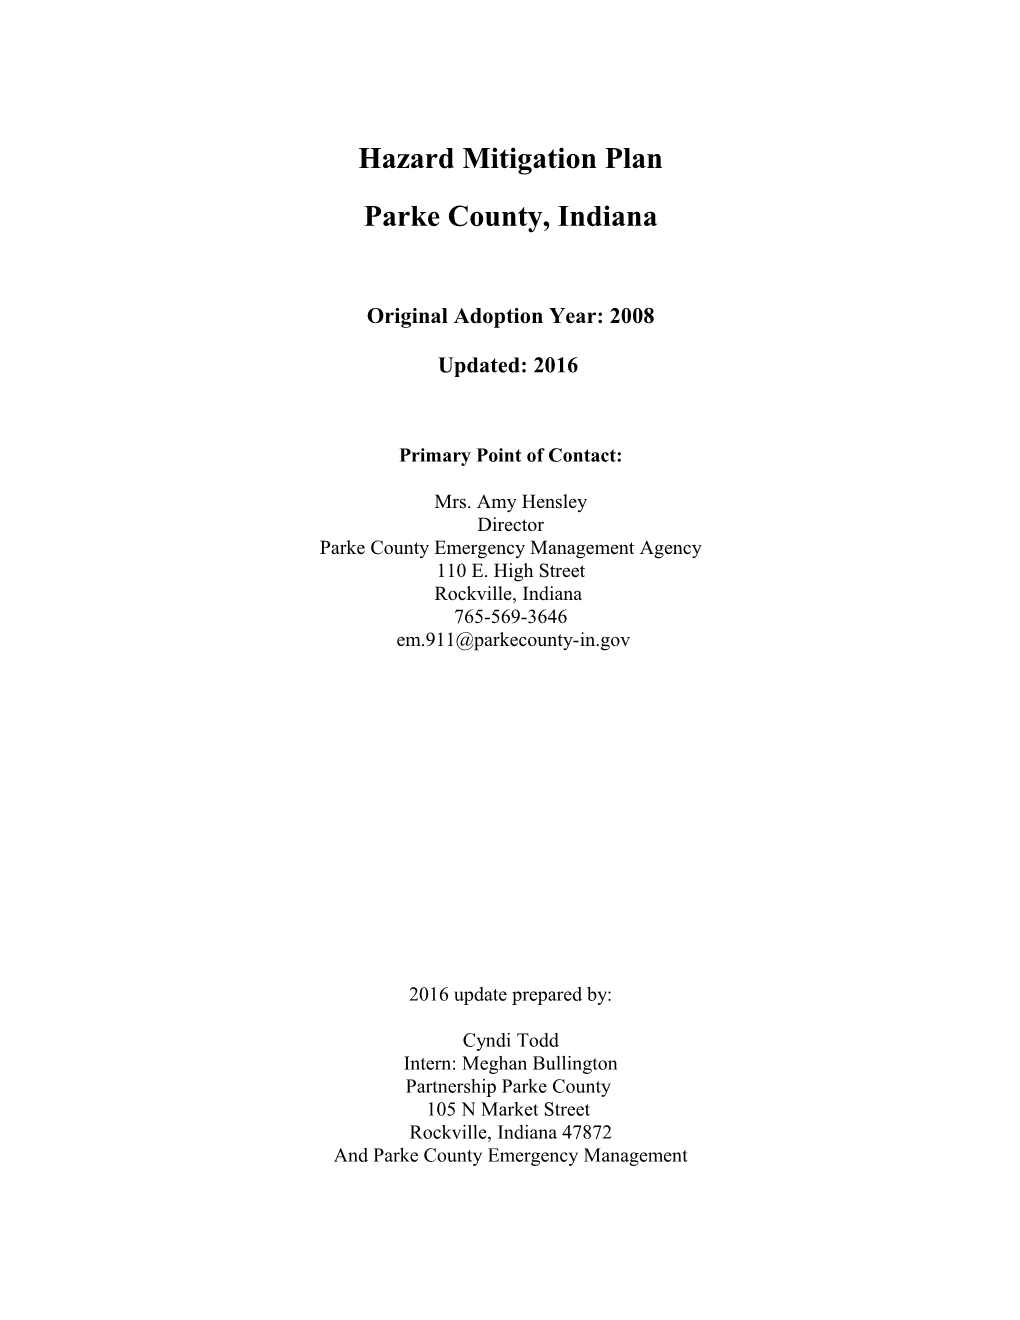 Parke County All Hazard Mitigation Plan June 29, 2017